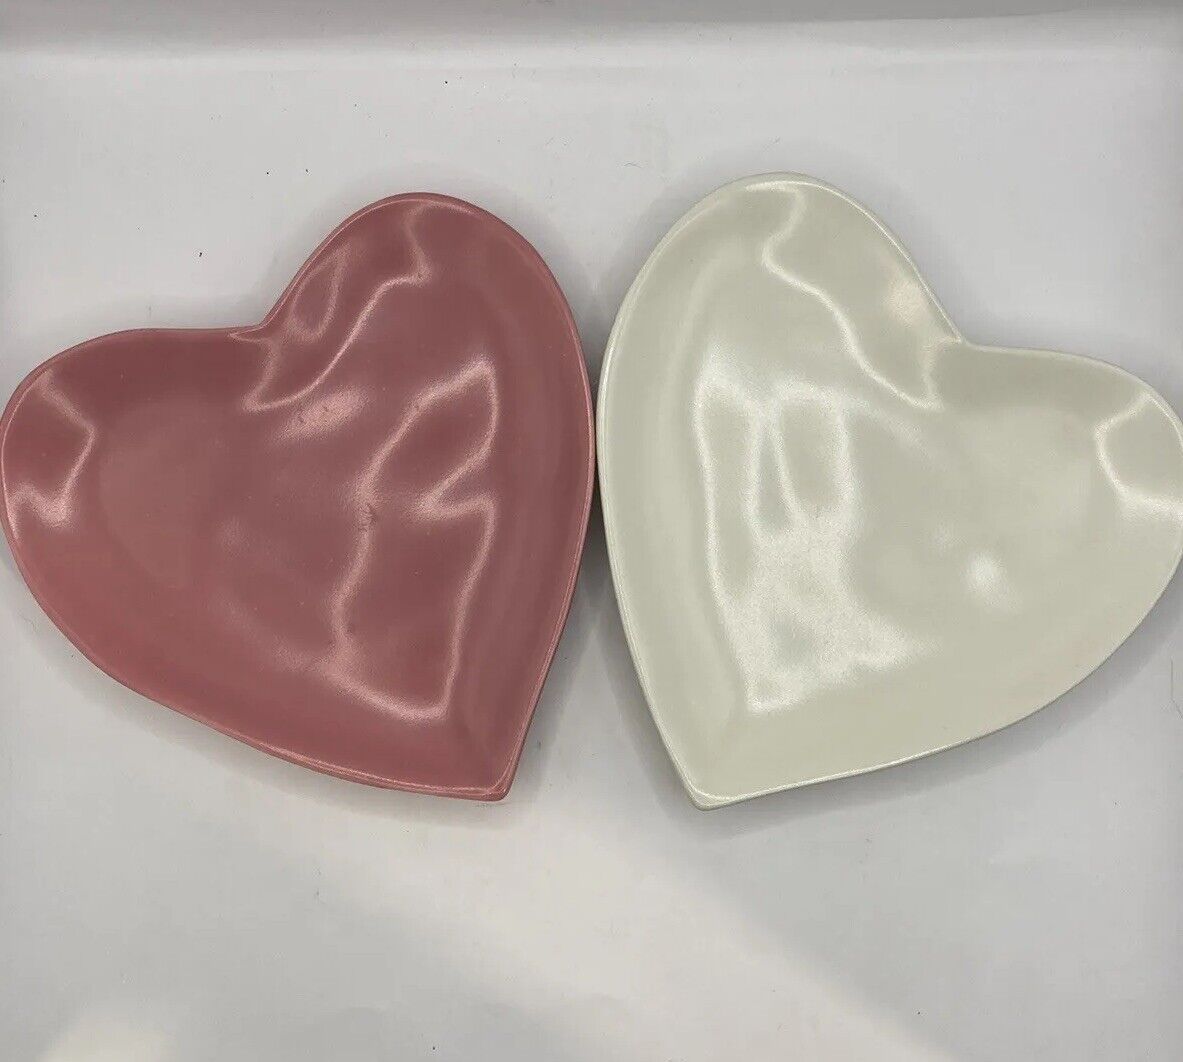 VTG Barbara Eigen Heart Plates Set of 2 Pink White Valentines Decor Dessert